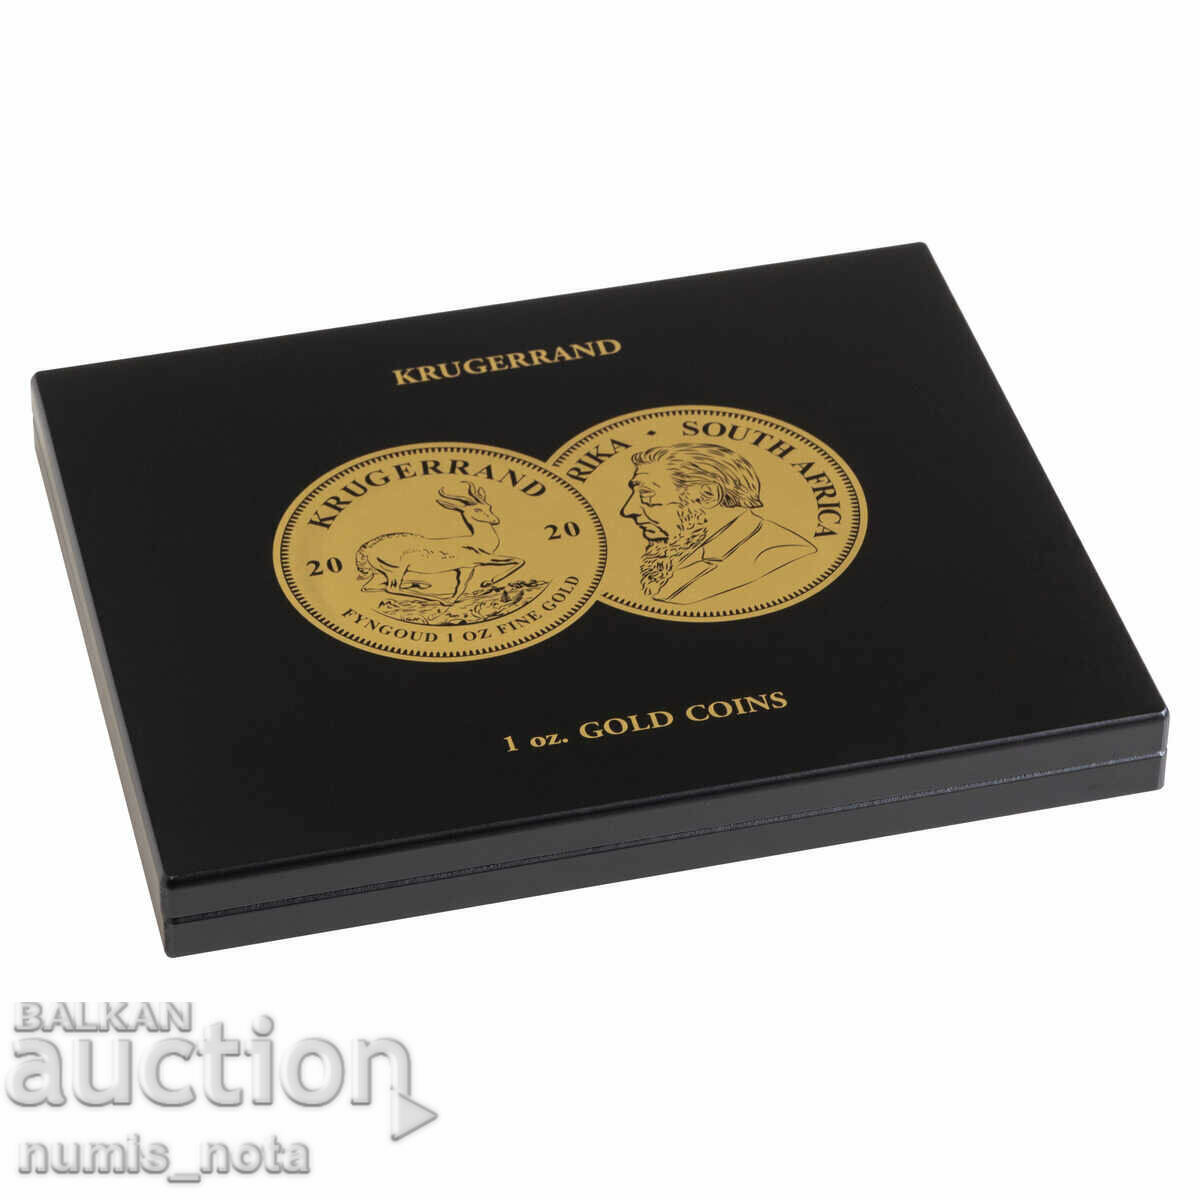 κουτί πολυτελείας για 30 χρυσά νομίσματα της 1 ουγκιάς. Κρούγκεραντ